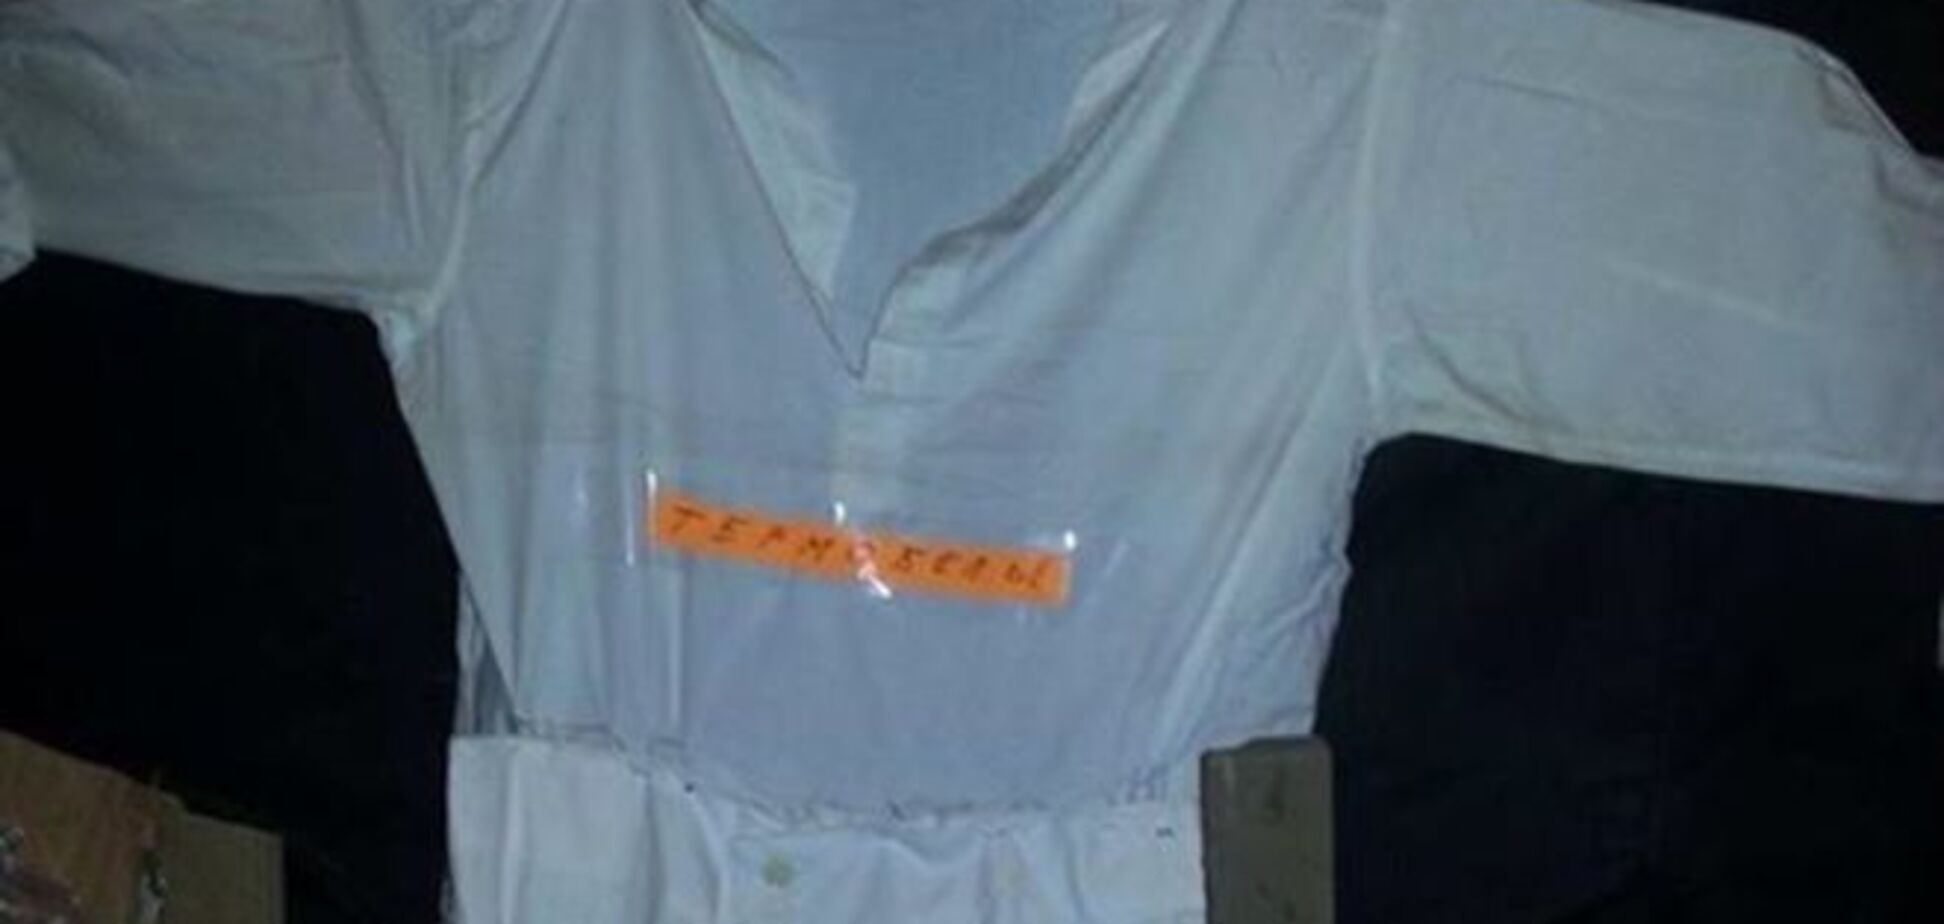 Термобілизна від Міноборони розлізлася після першого прання: опубліковано фото